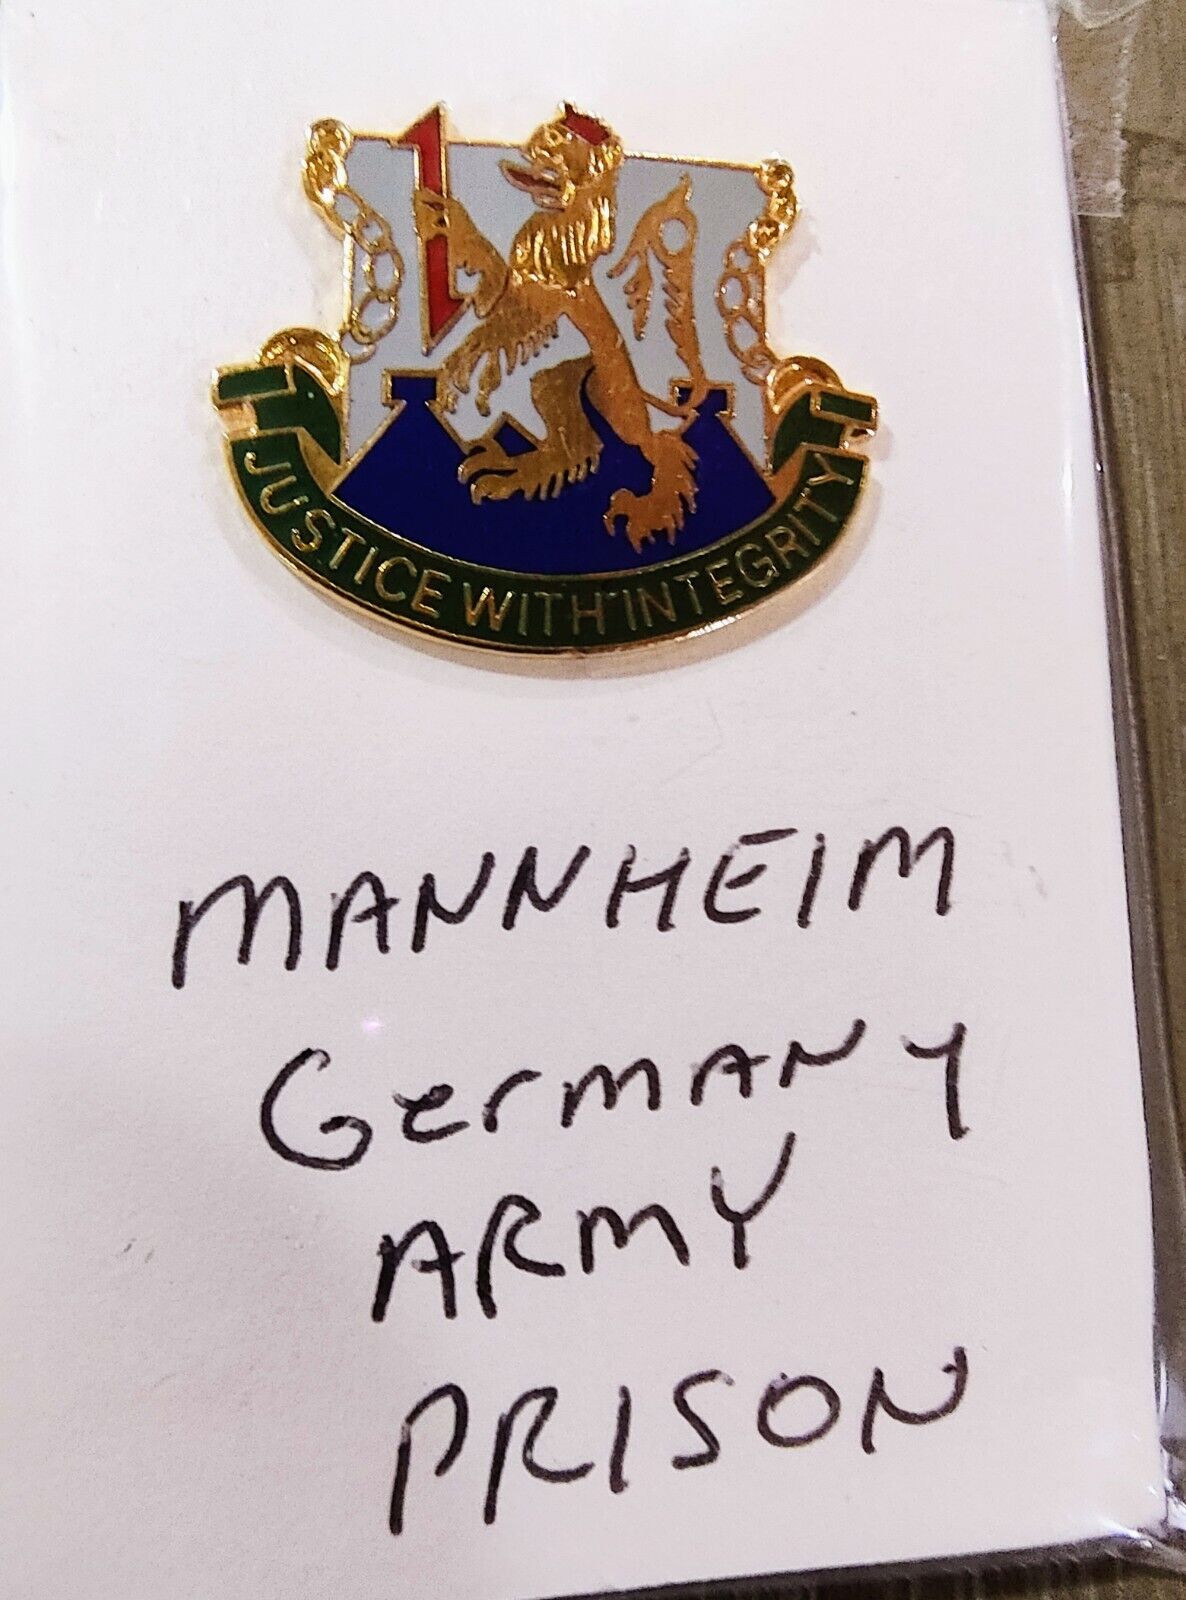 U.S. Army Mannheim Germany Prison insinia crest